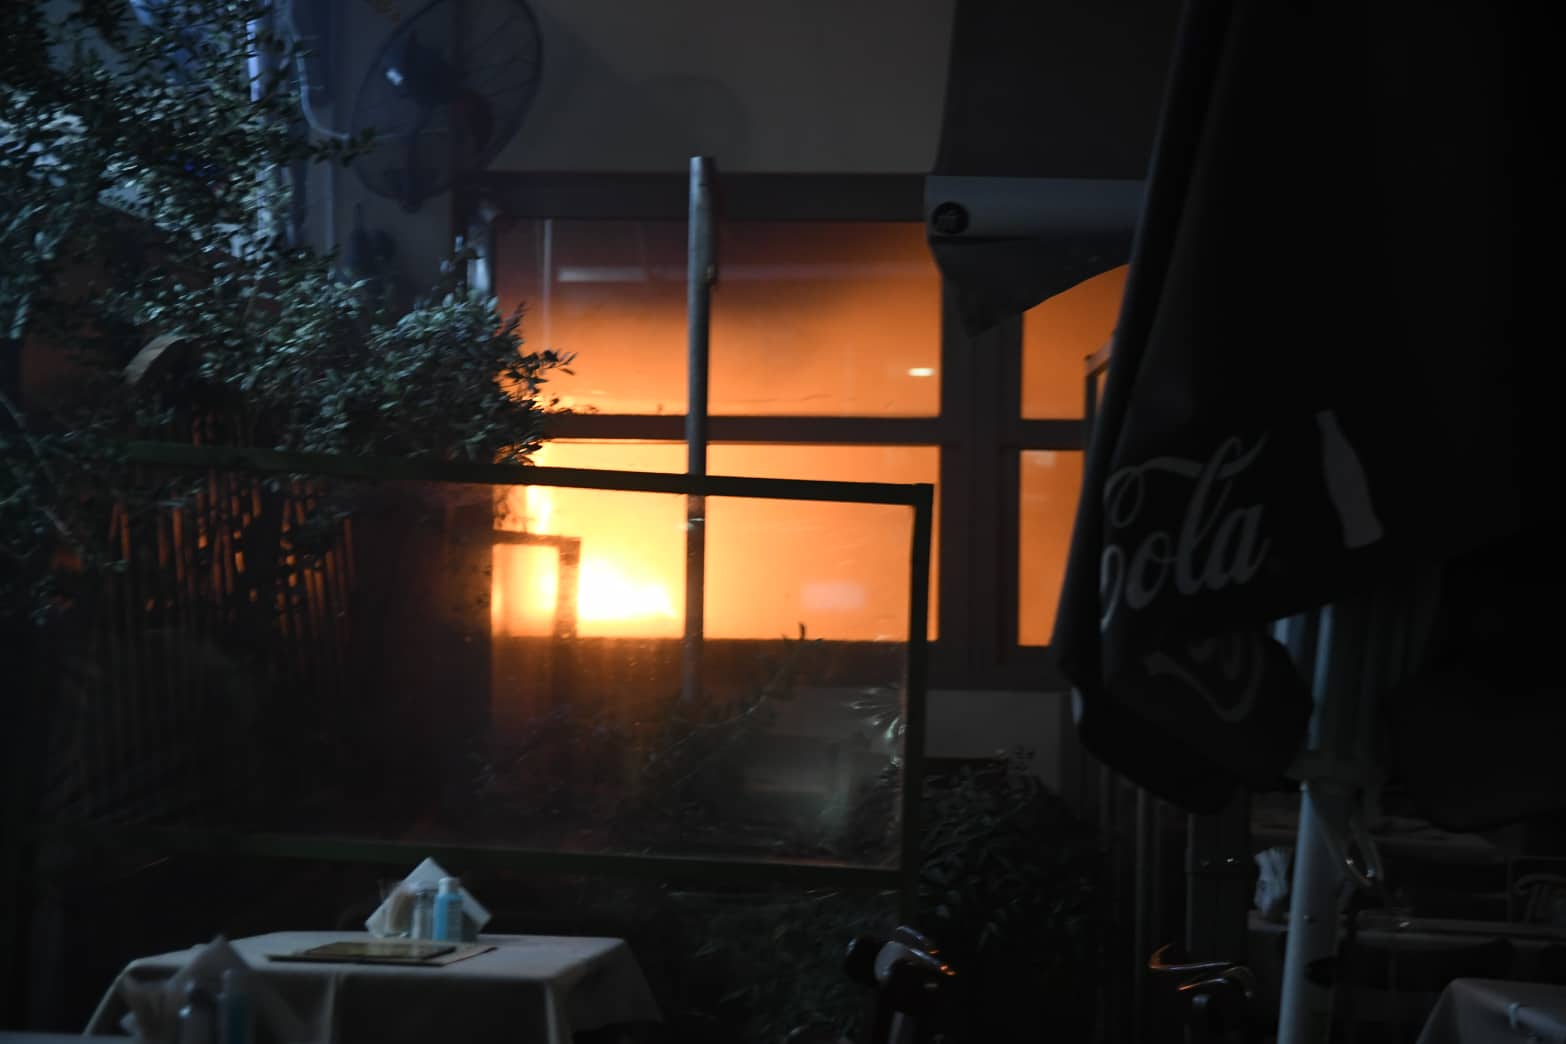 Λάρισα: Φωτιά σε ψητοπωλείο – Δείτε εικόνες από το σημείο και την προληπτική εκκένωση εστιατορίου